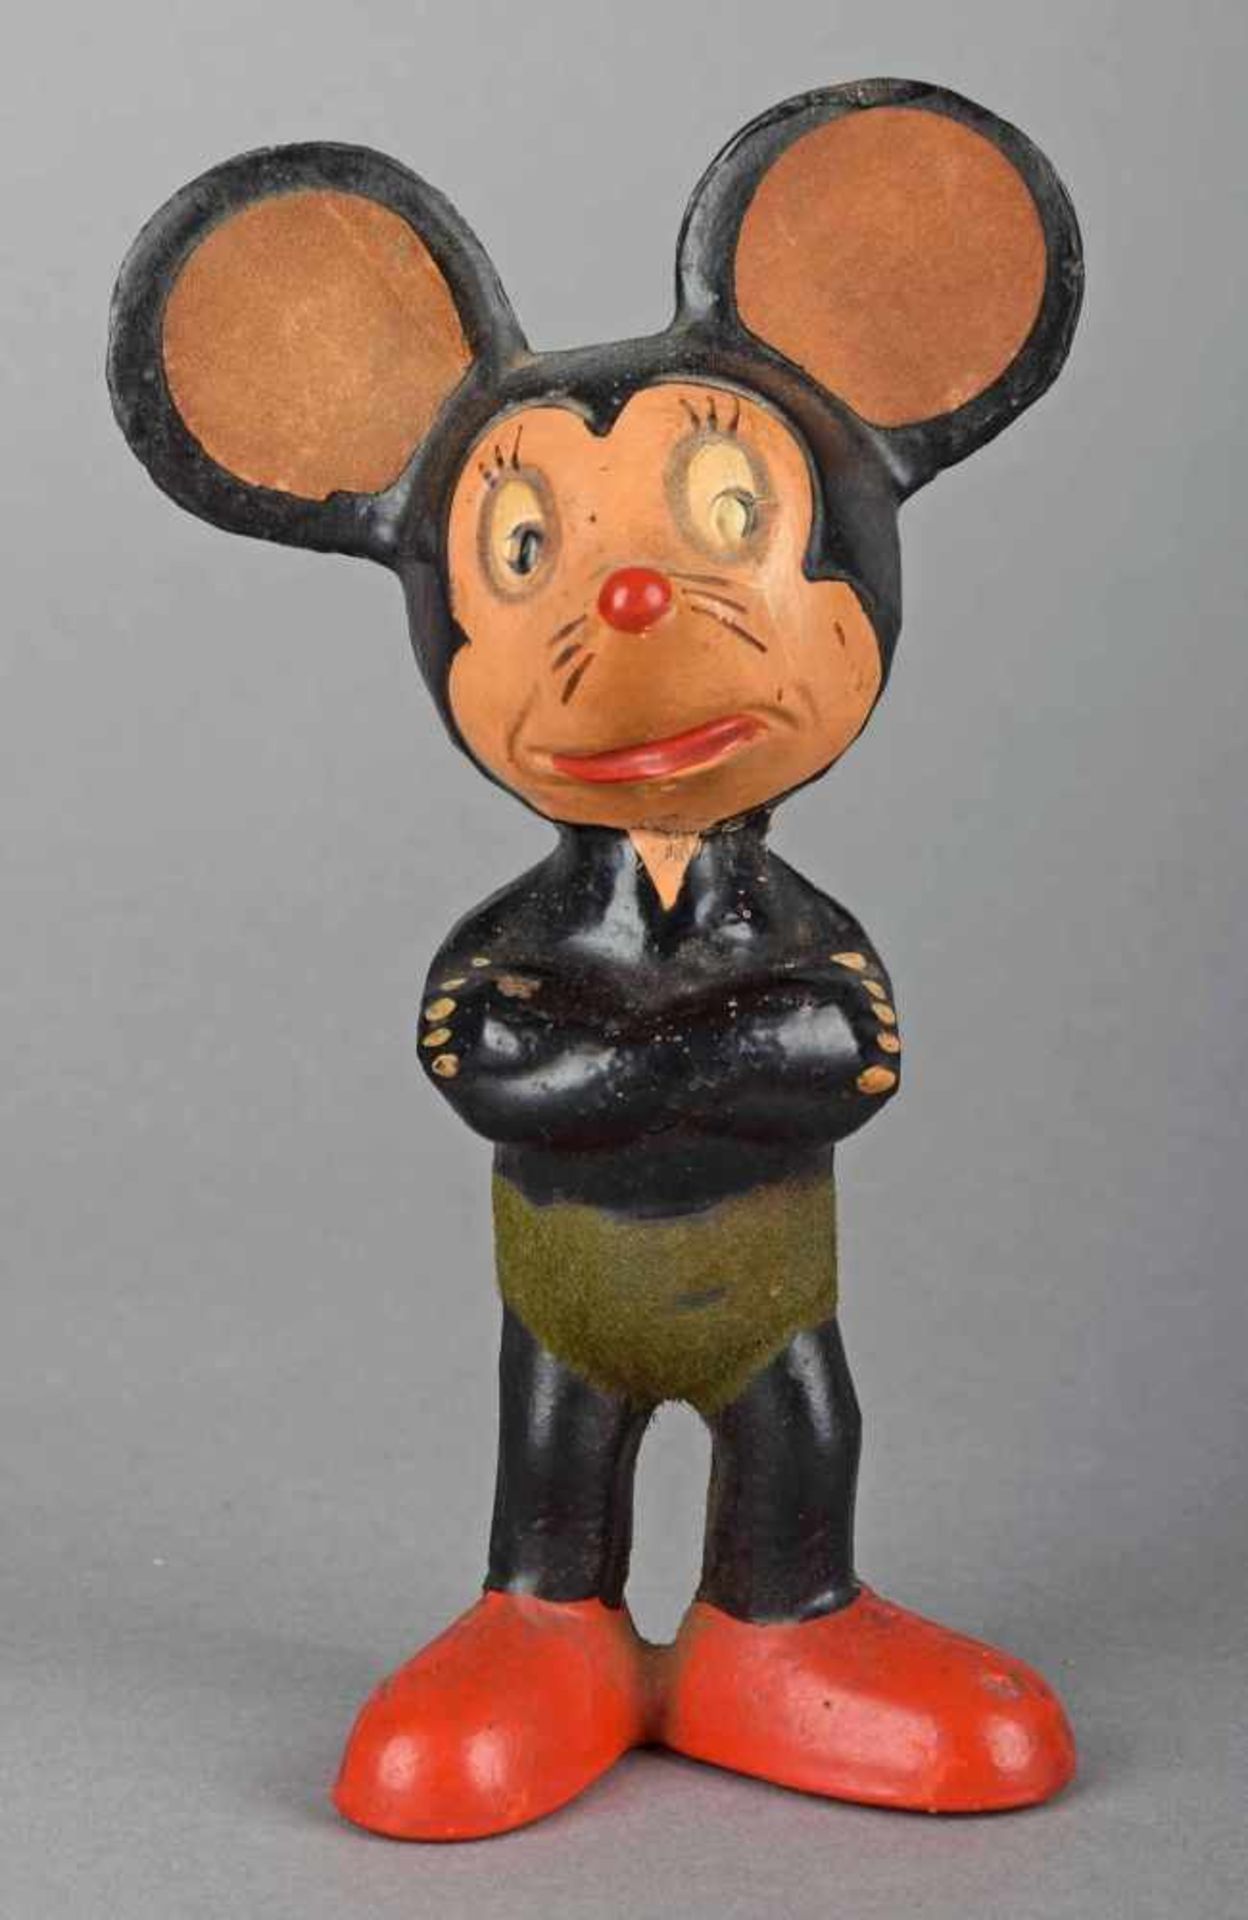 Mickeymausfigur Masse farbig gestaltet, insg. gute Erhaltung, H ca. 14 cm, 1940/50er Jahre - Bild 2 aus 2